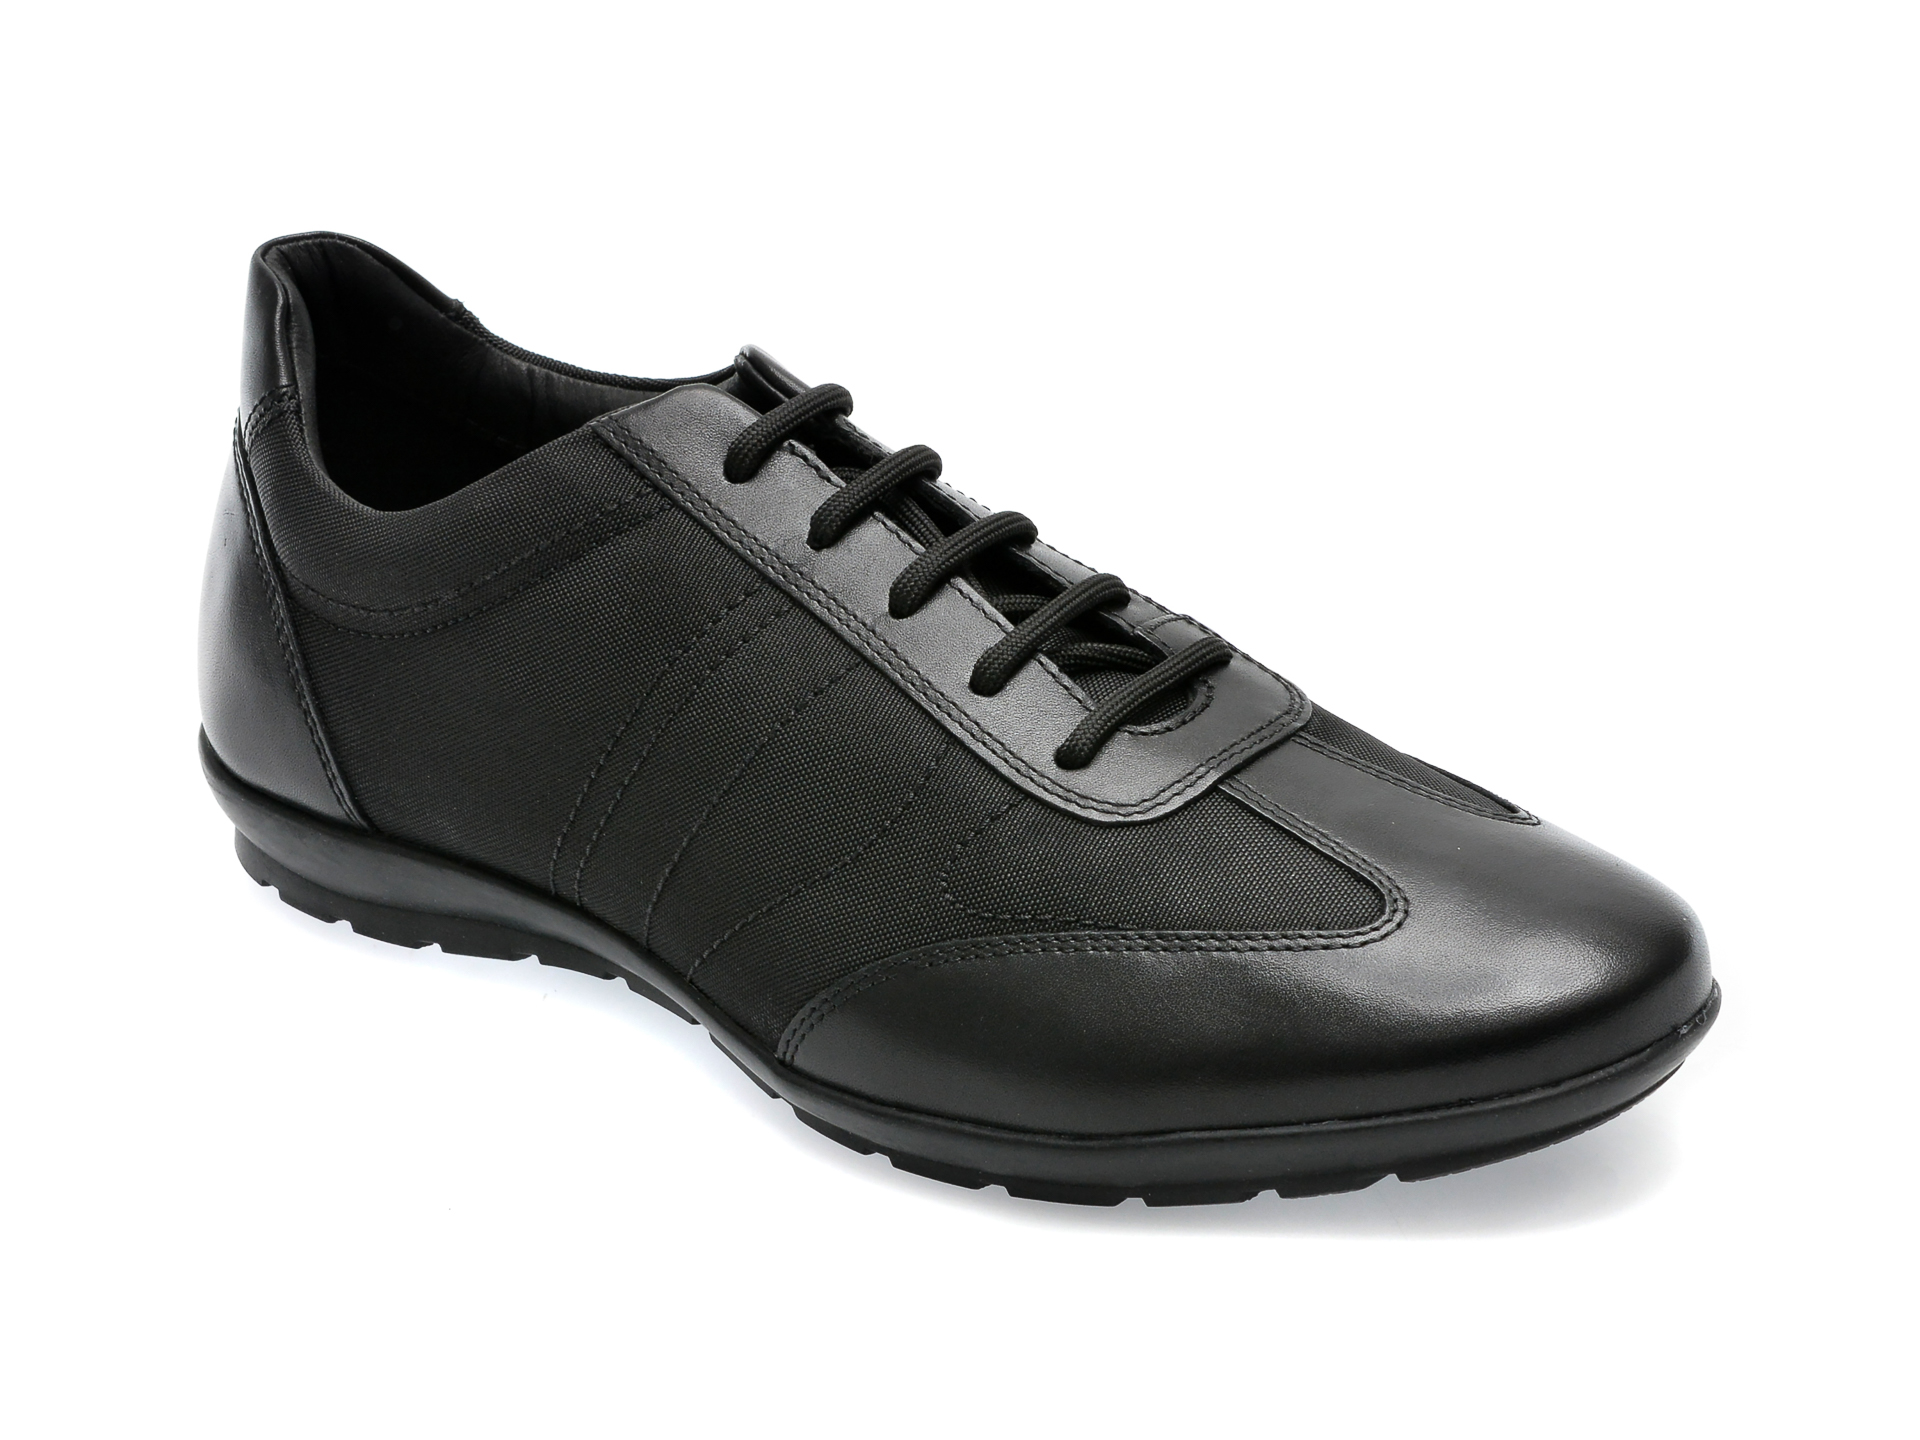 Pantofi GEOX negri, U74A5B, din piele naturala si material textil /barbati/pantofi